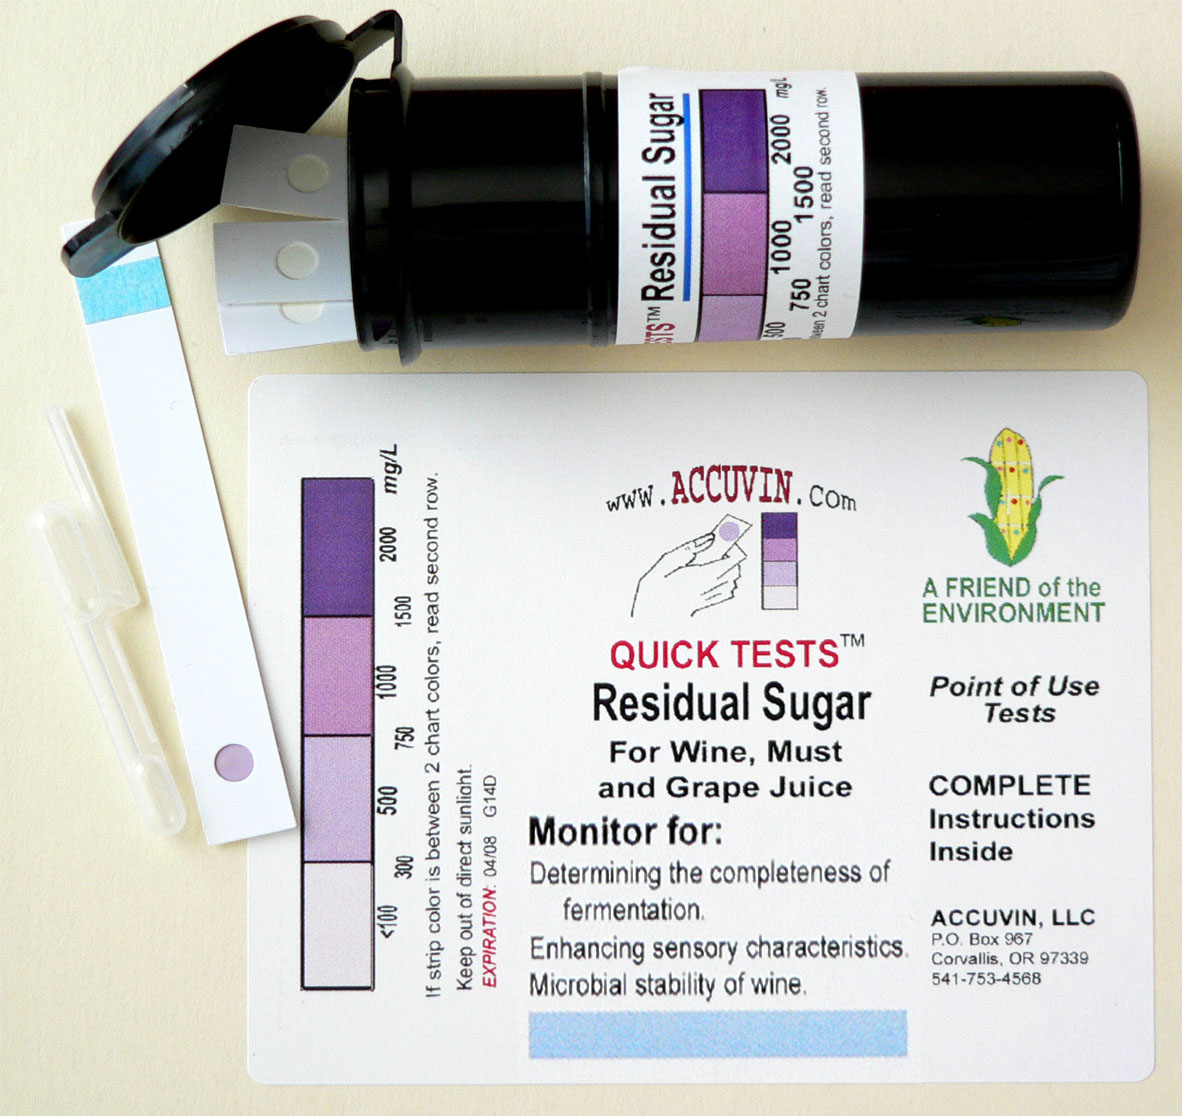 accuvin residual sugar 10 test